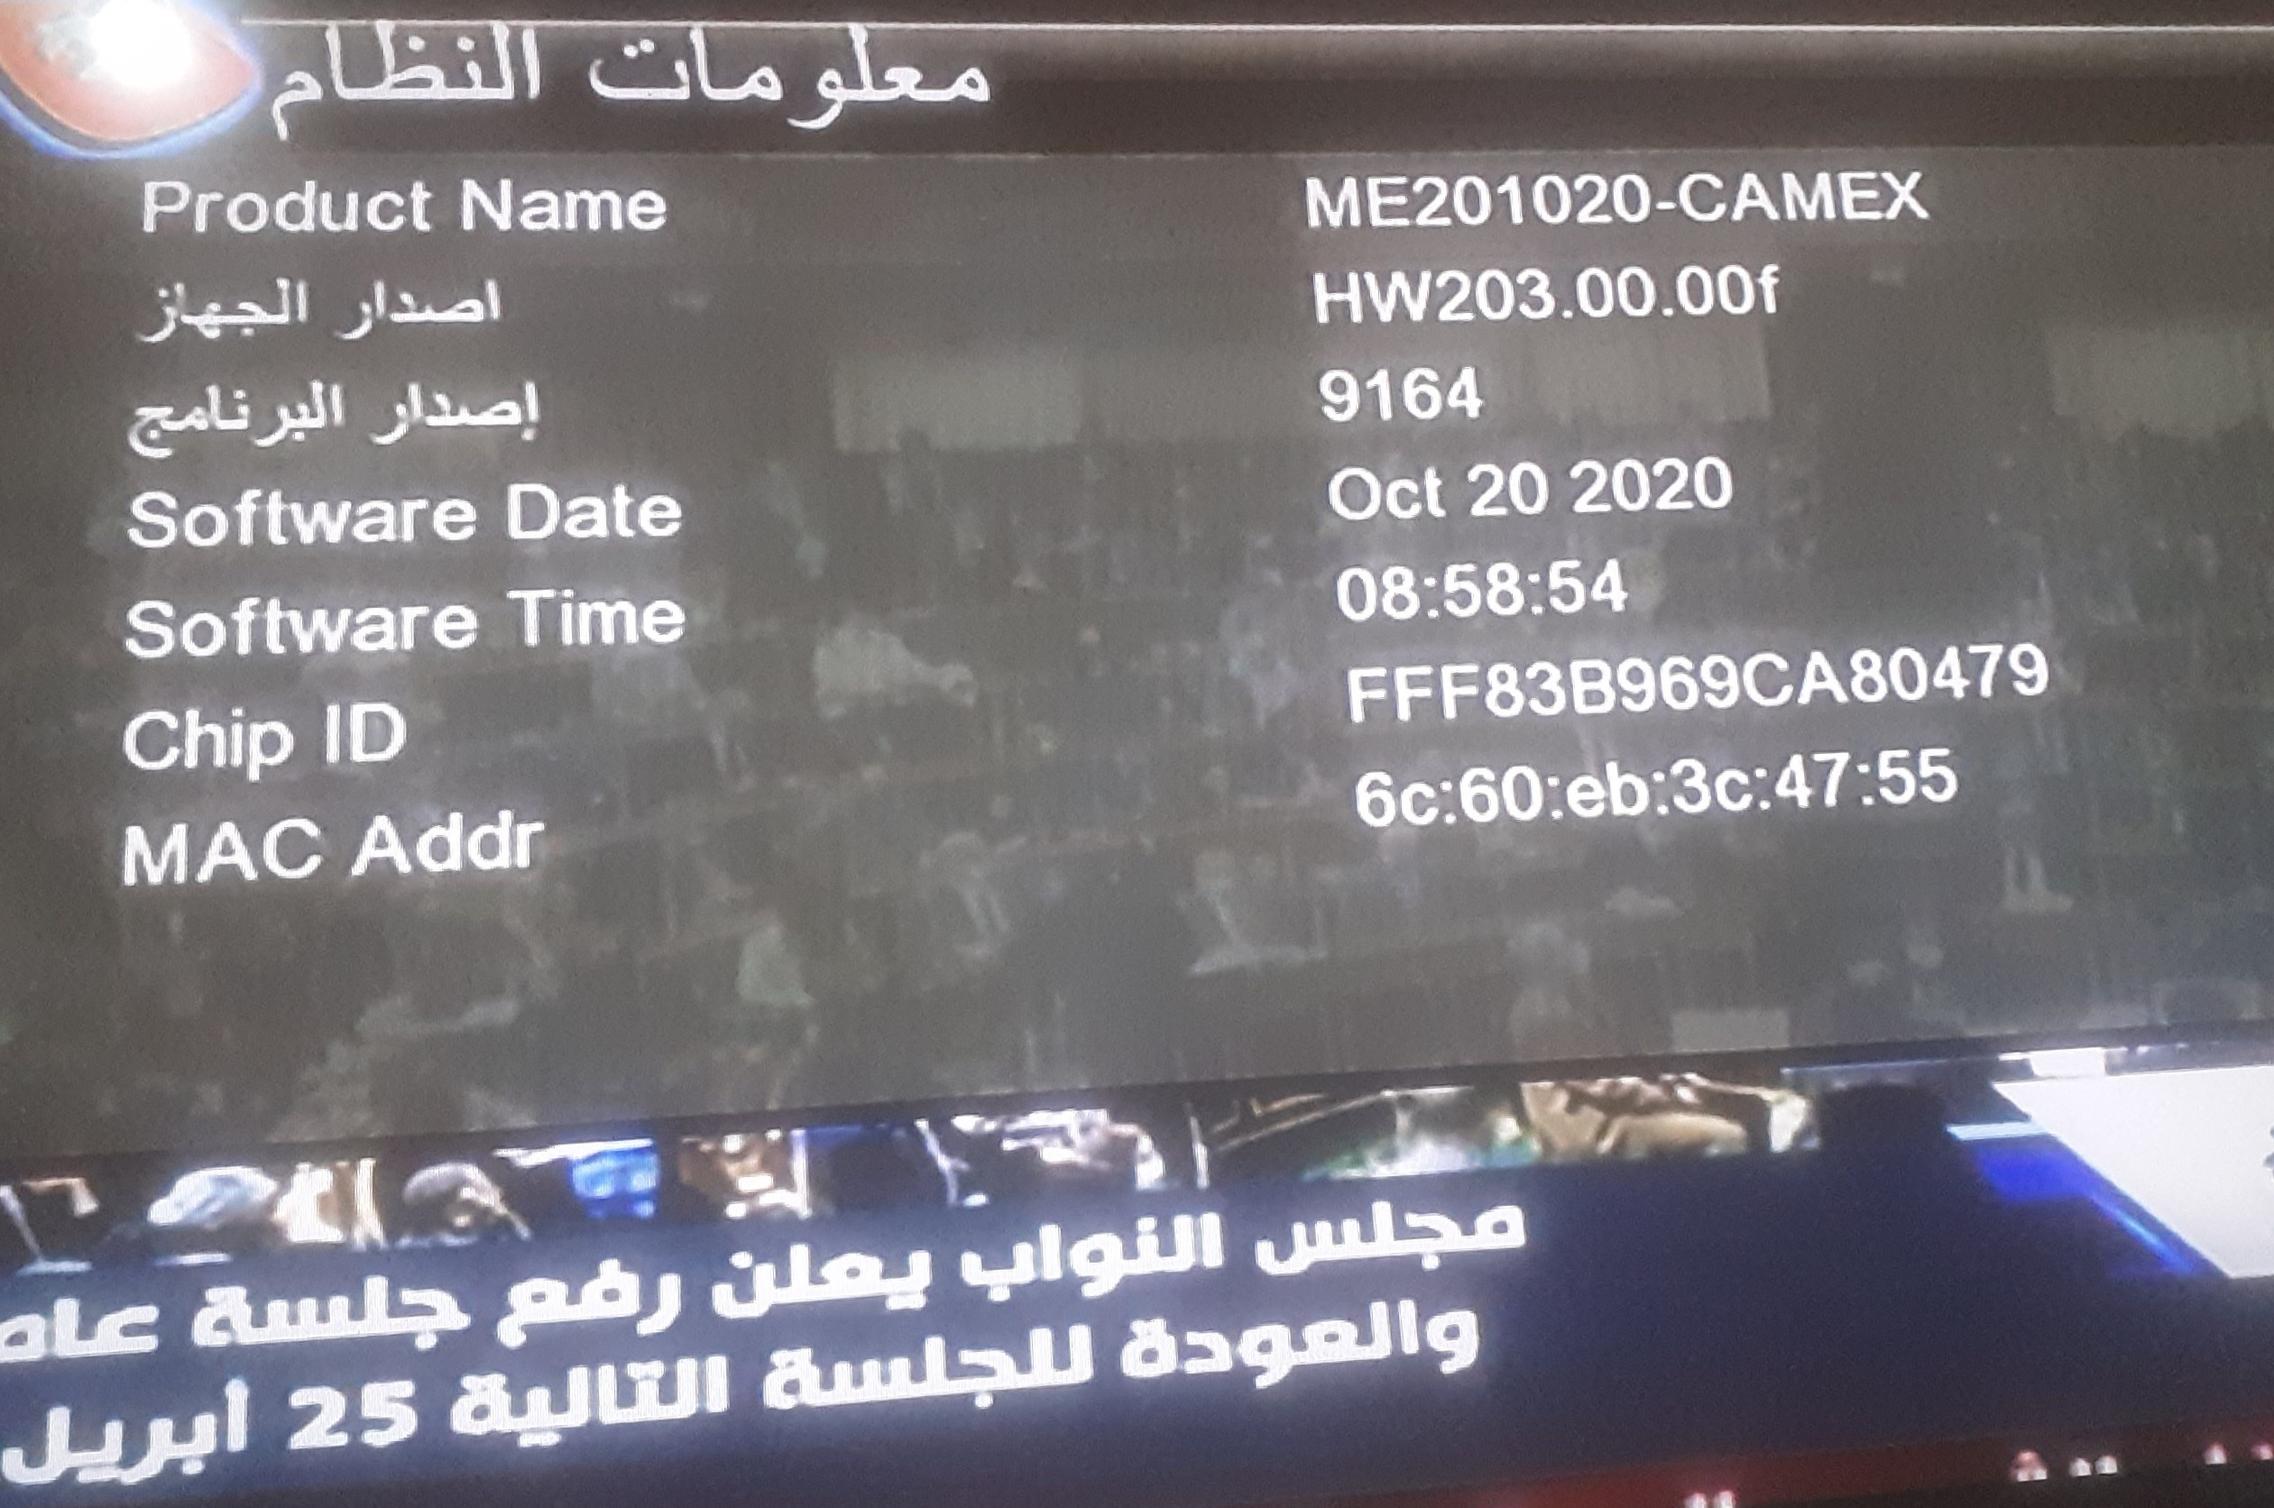 احدث ملف عربي REDBOX RX-9000 HD MINI وroyal 999 الاحمرالمزود بـ2 شاشة رقمية و CAMEX الاسود 10-4-2023 P_24840jjjg2